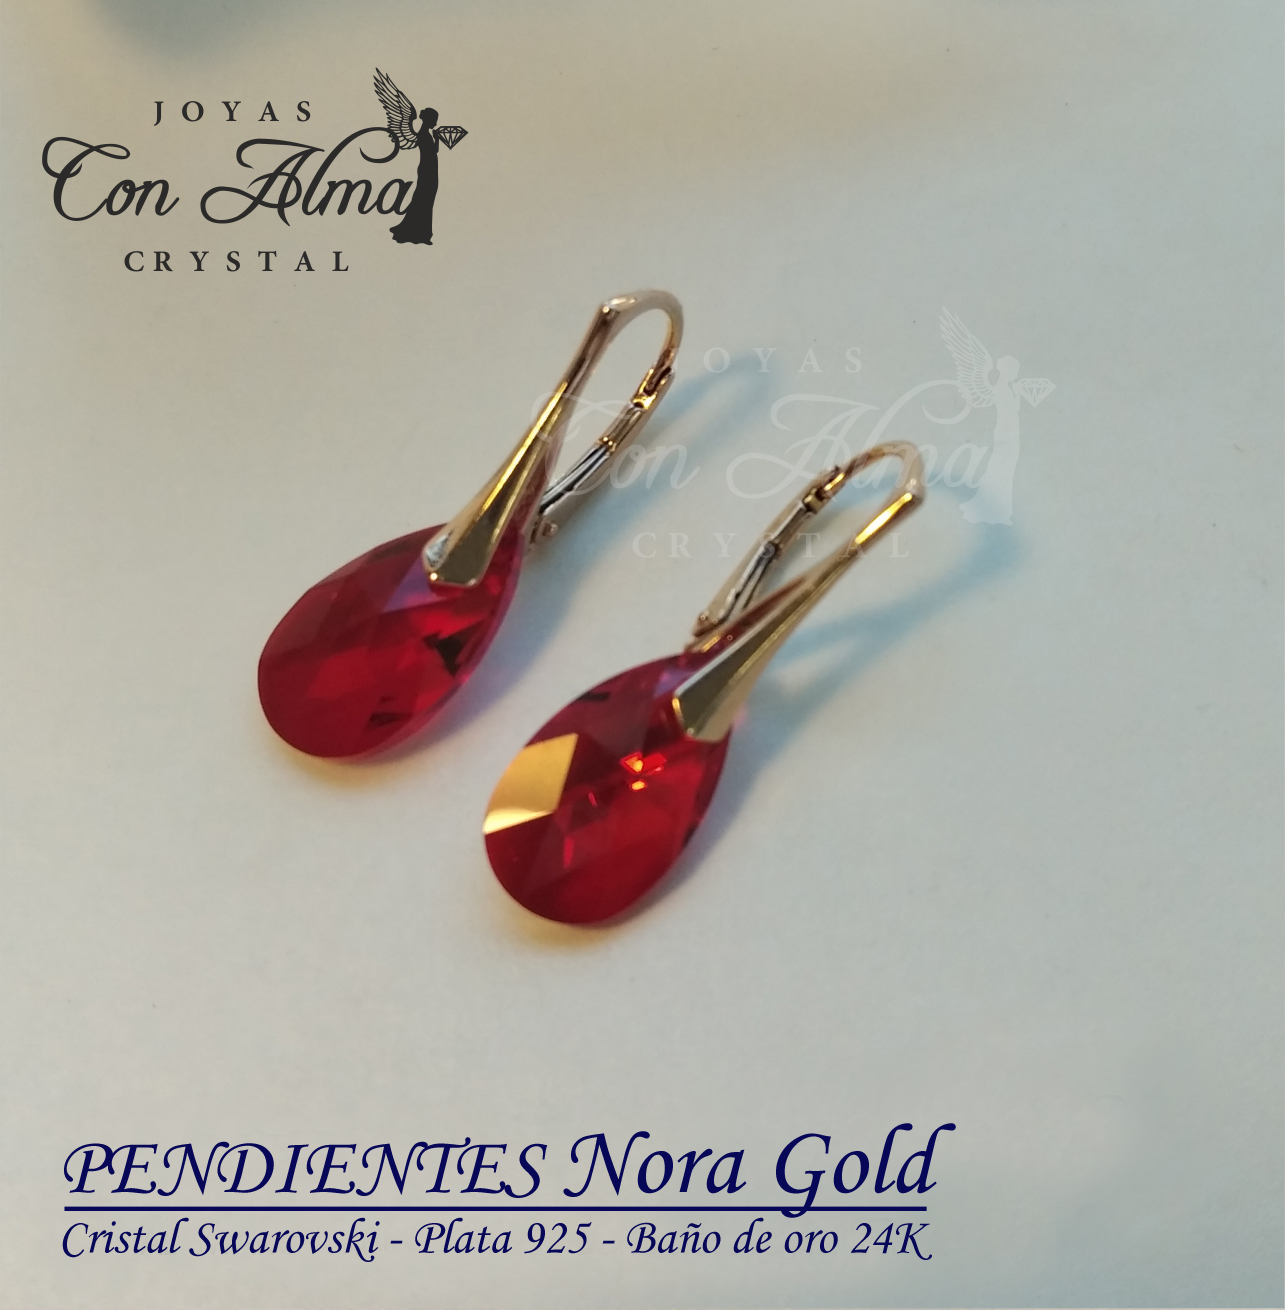 Pendientes Nora Gold 34,99 €